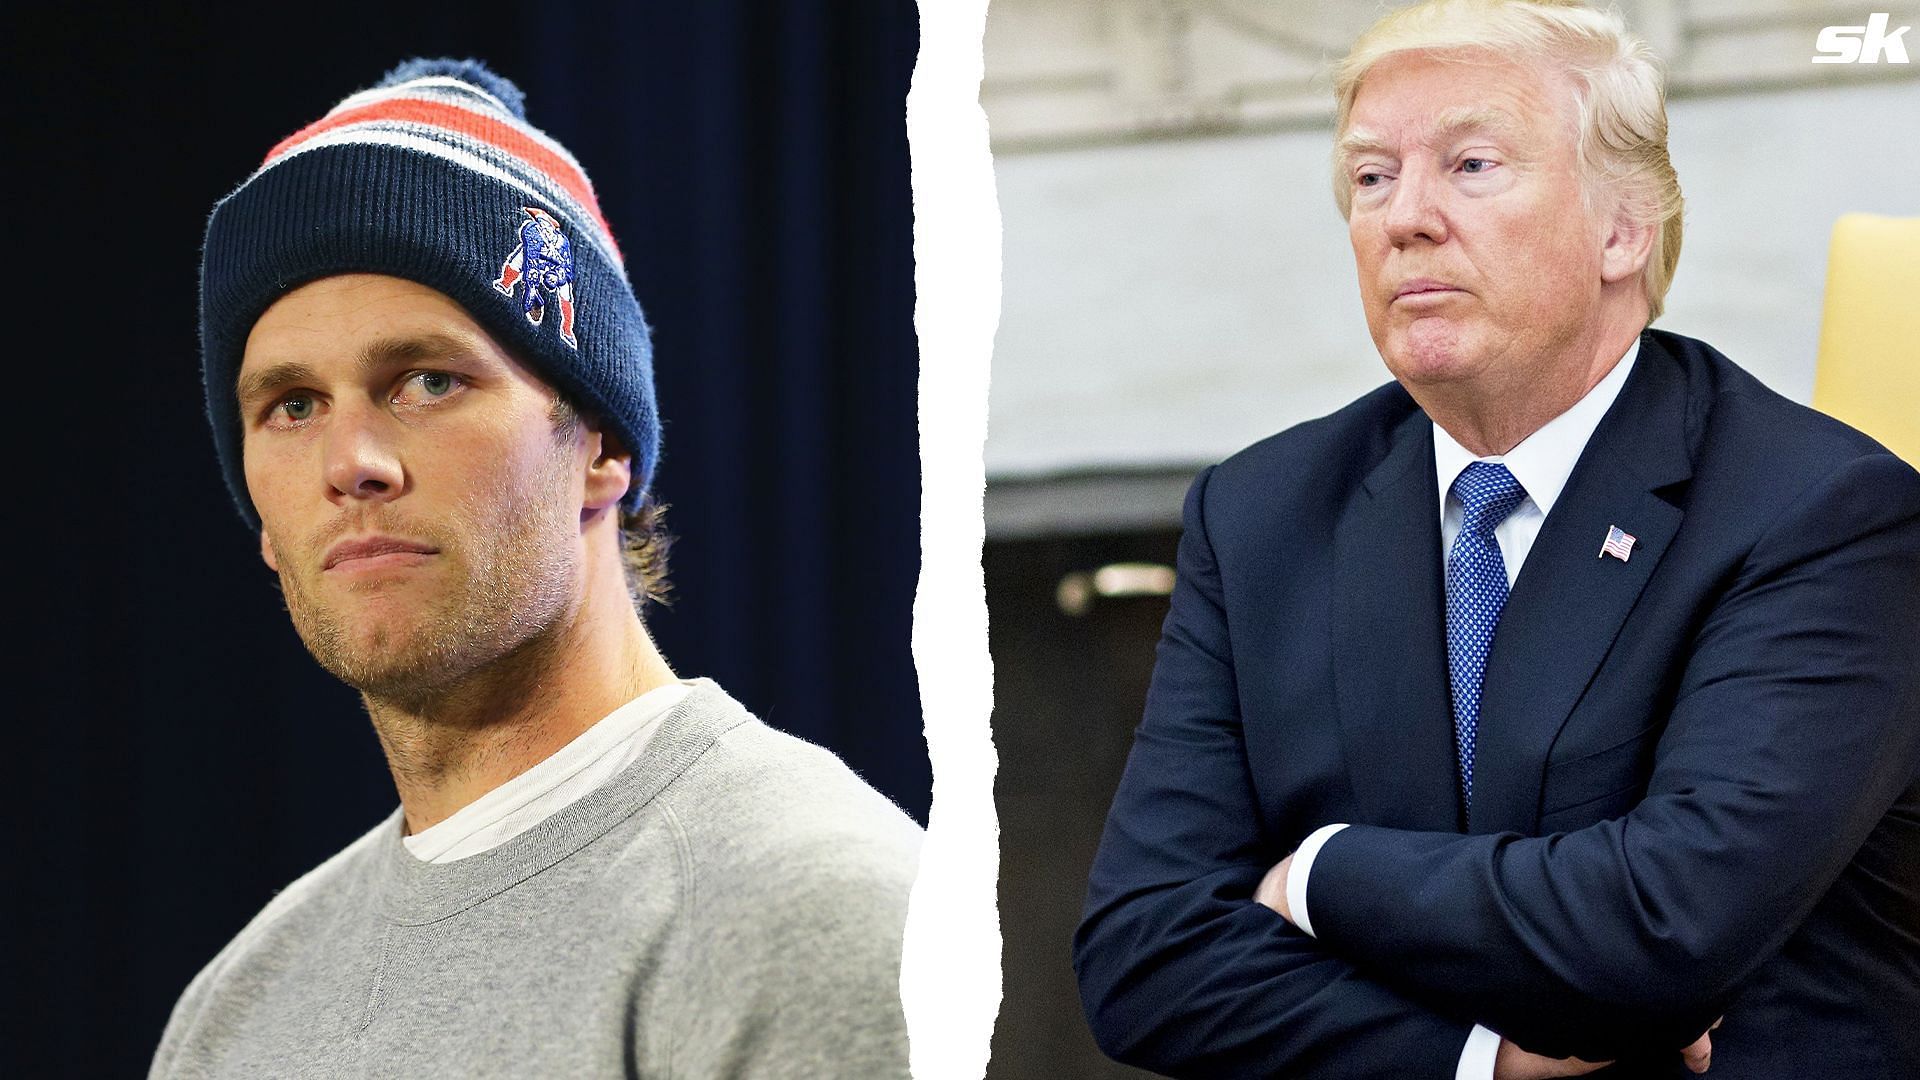 Former quarterback Tom Brady and former President Donald Trump